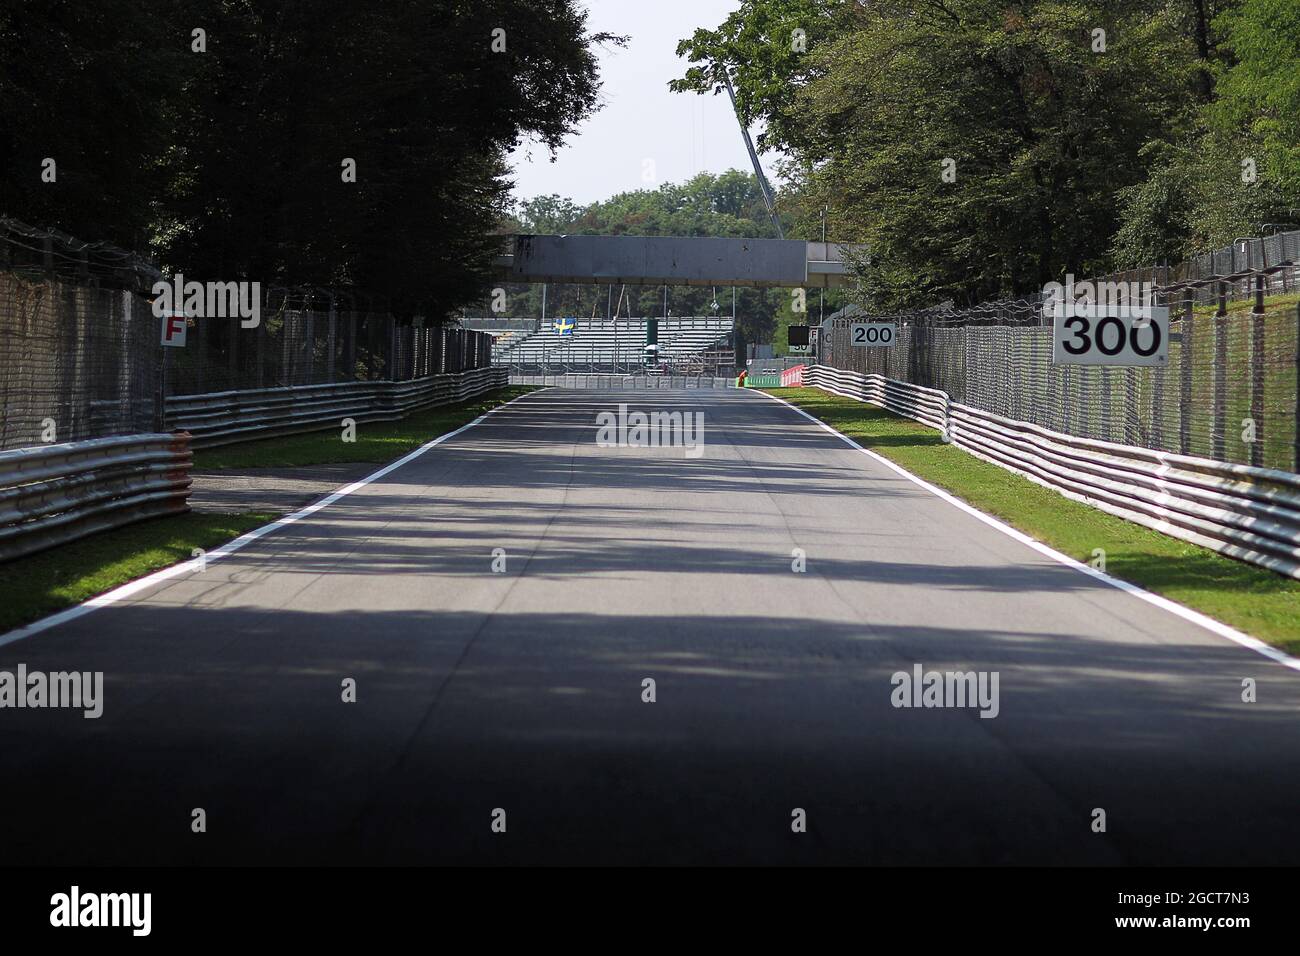 L'avvicinamento alla variante Ascari. Gran Premio d'Italia, giovedì 5 settembre 2013. Monza Italia. Foto Stock